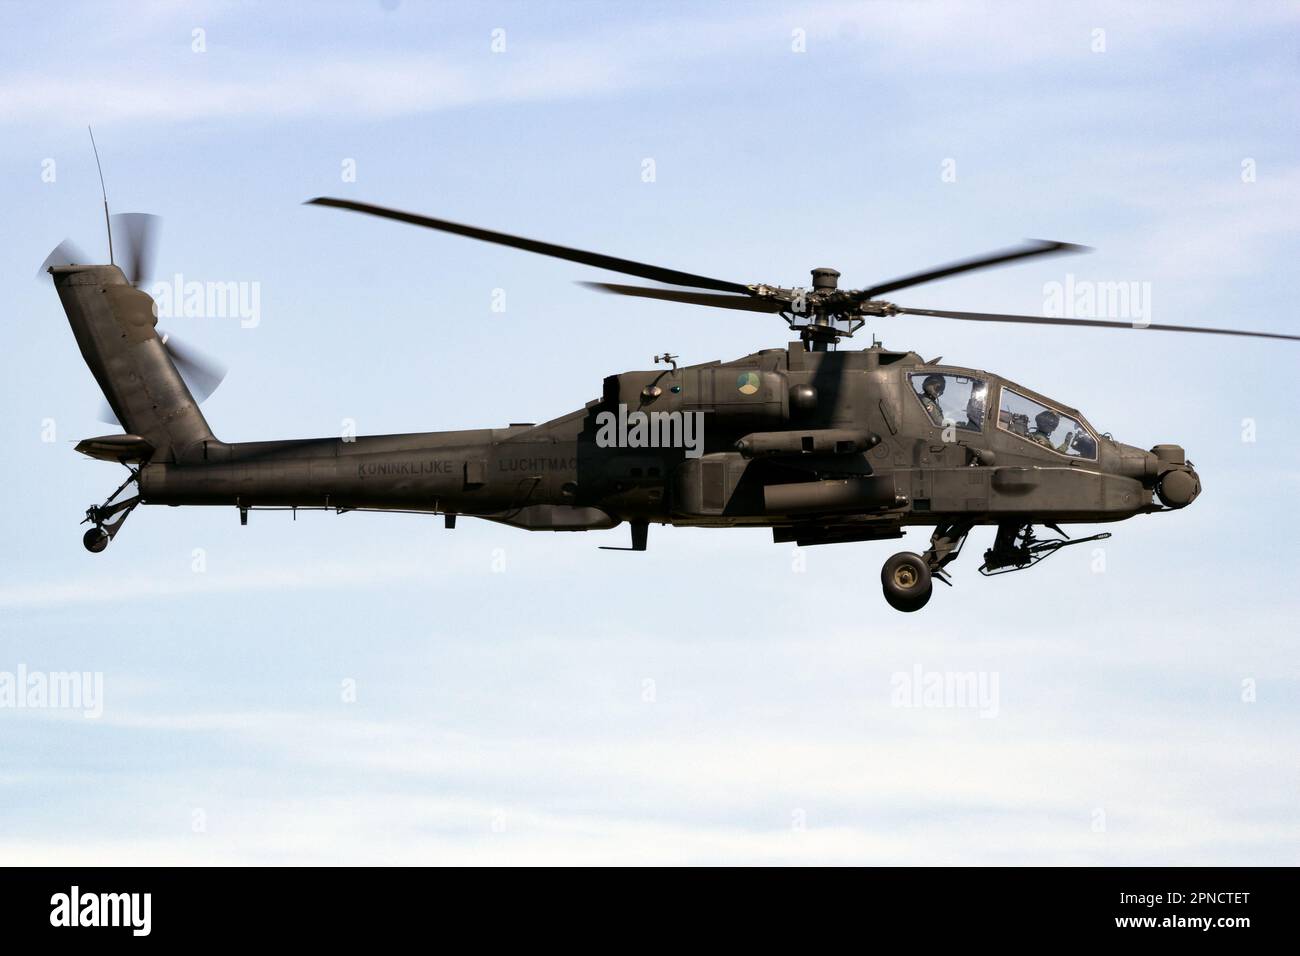 Helicóptero de ataque Boeing AH-64D Apache en vuelo. Gilze-Rijen, Países Bajos - 7 de septiembre de 2016 Foto de stock